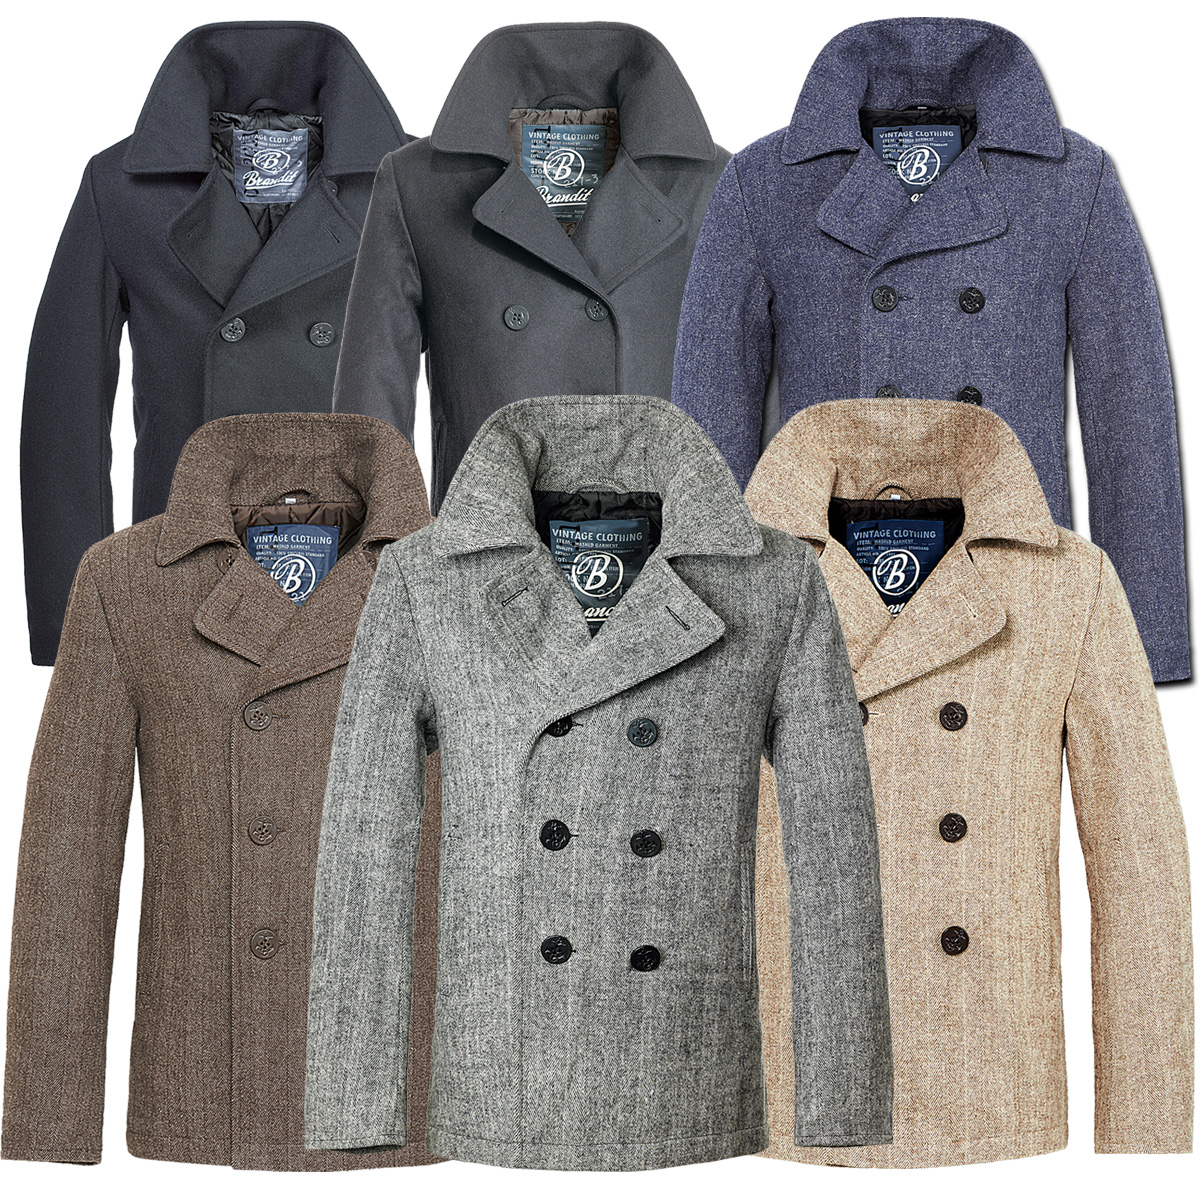 Brandit Pea Coat Men's Jacket / Trench Parka Autumn Winter | eBay